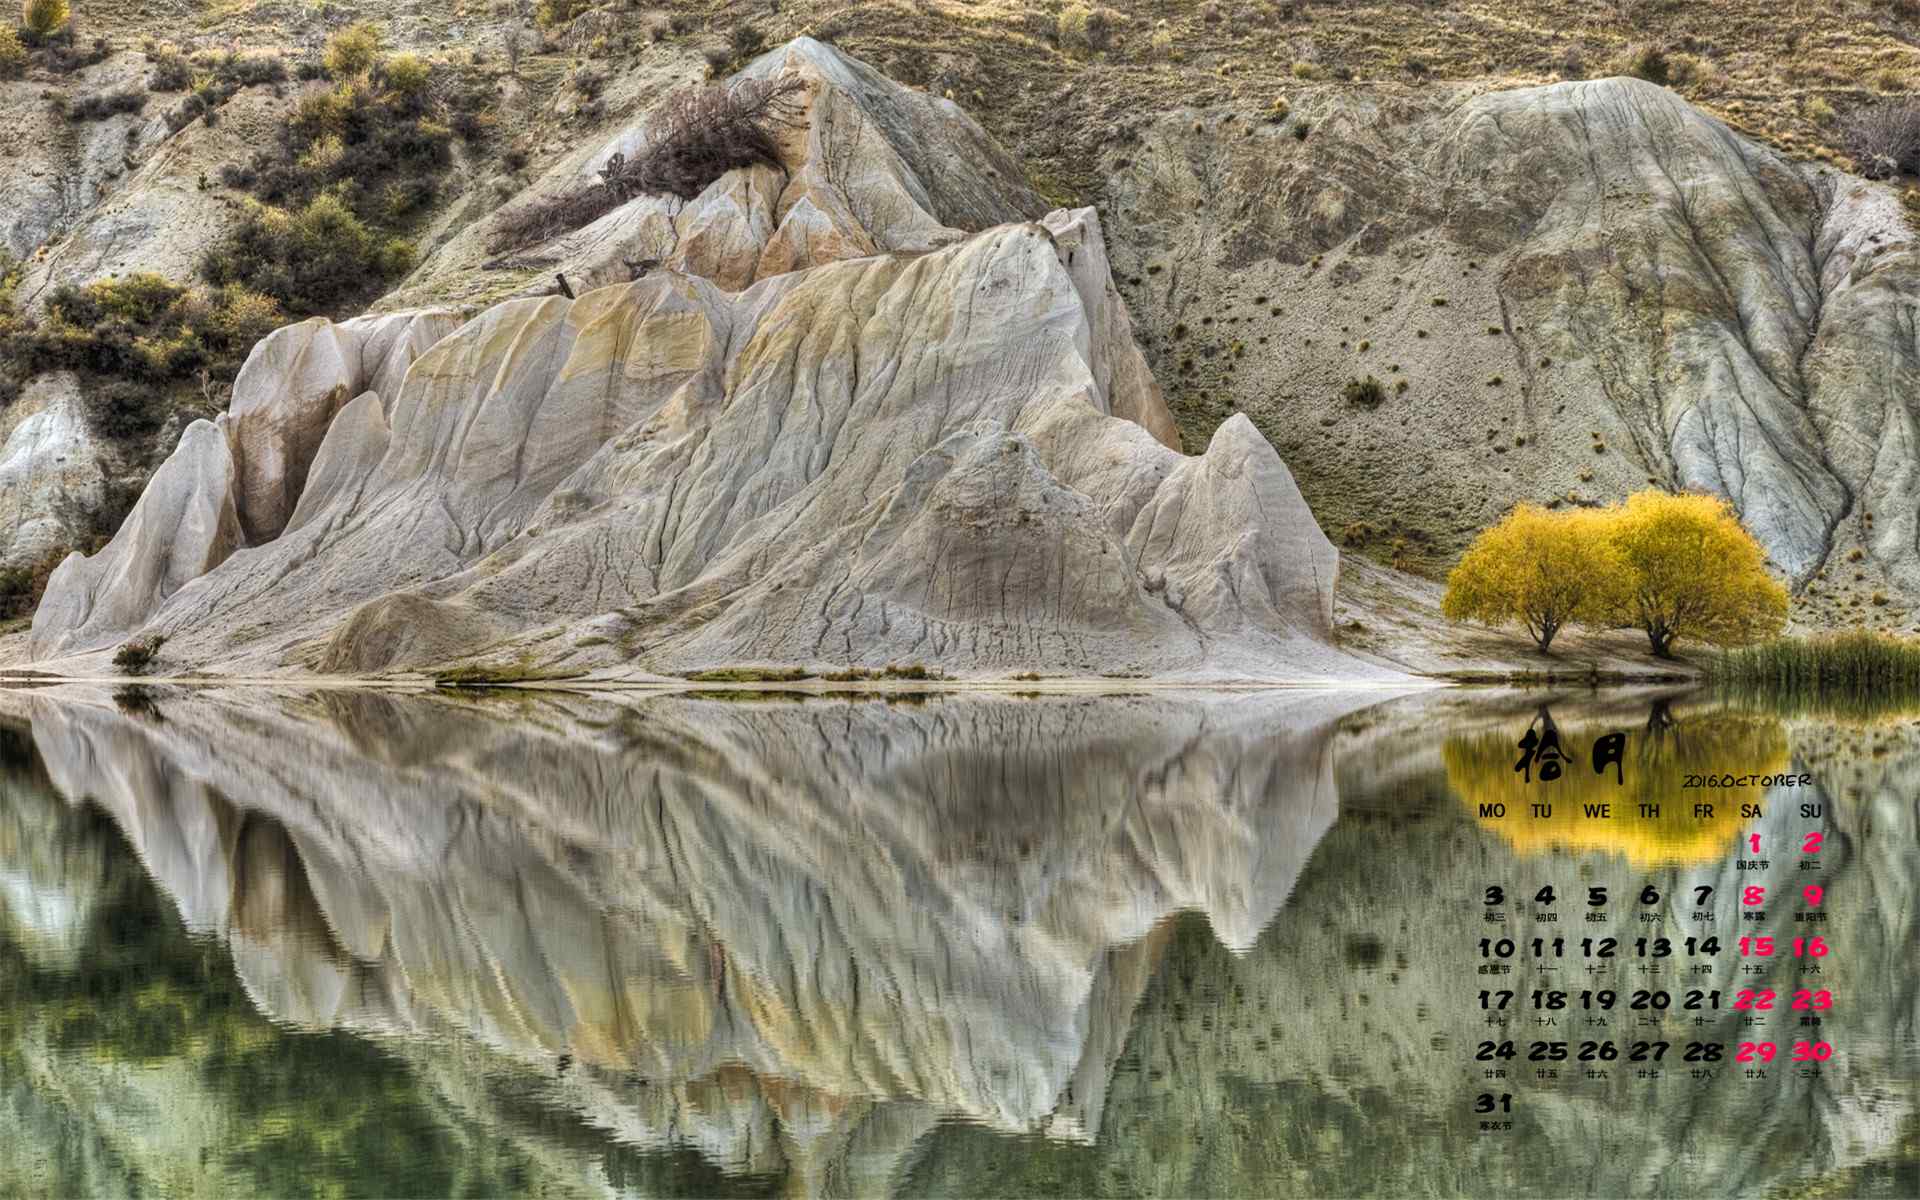 2016年10月日历唯美自然山水风景高清壁纸